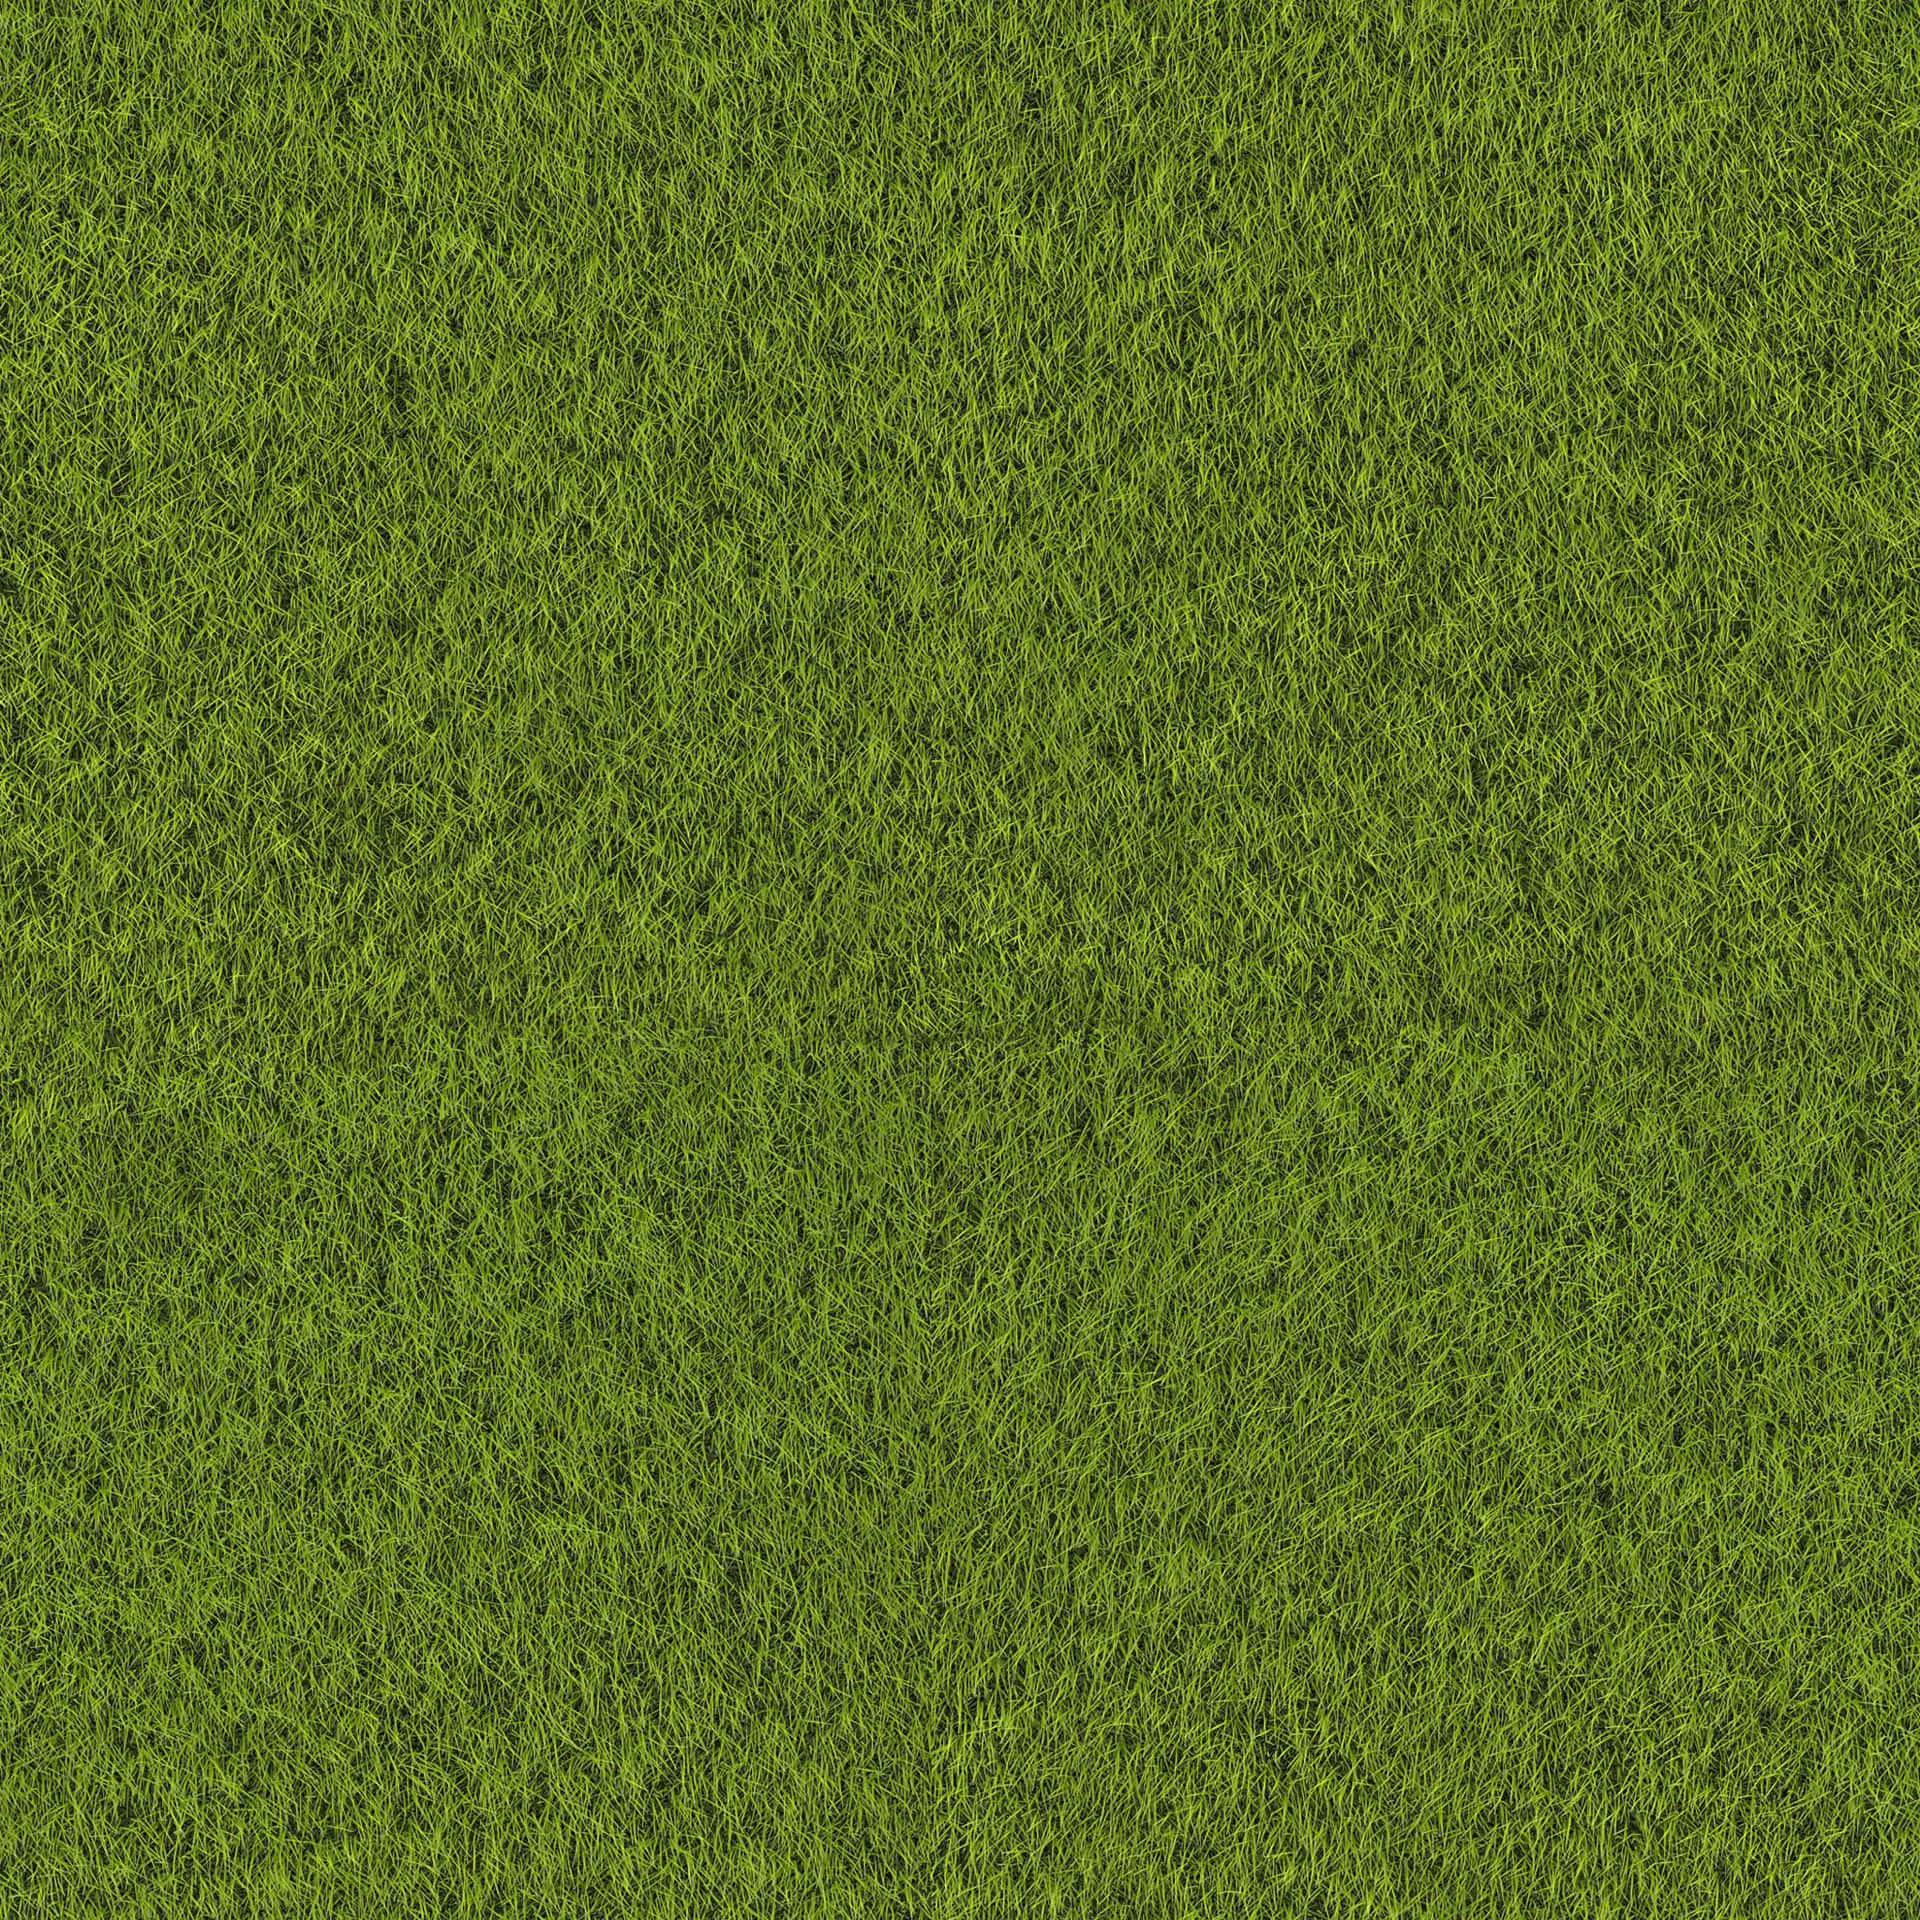 A close-up of a grass texture